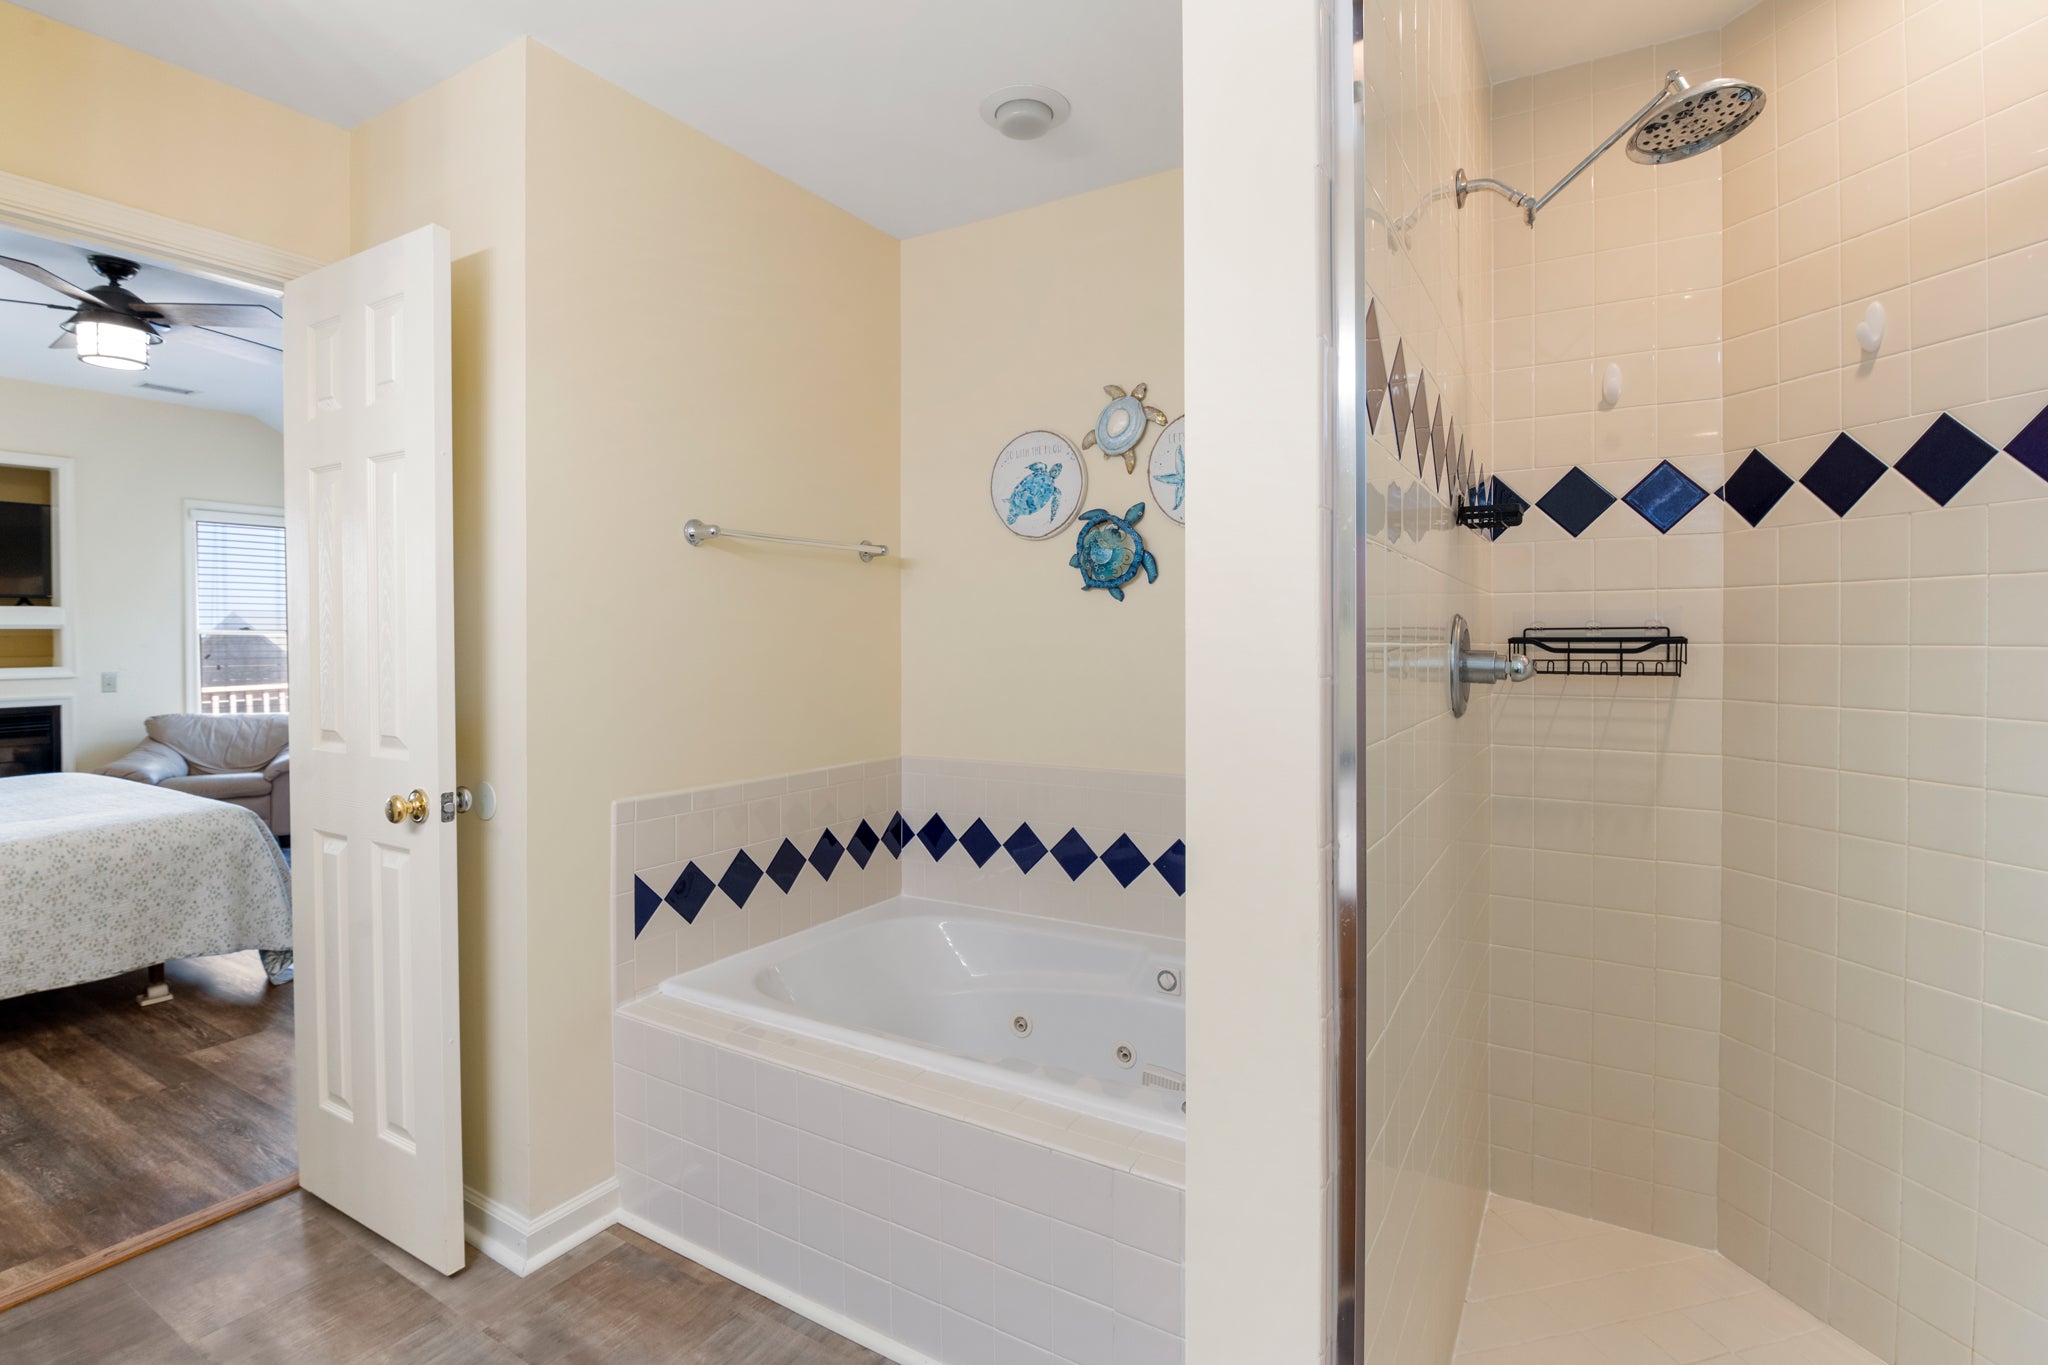 JR4309: Azure Dreams l Top Level Bedroom 6 Private Bath